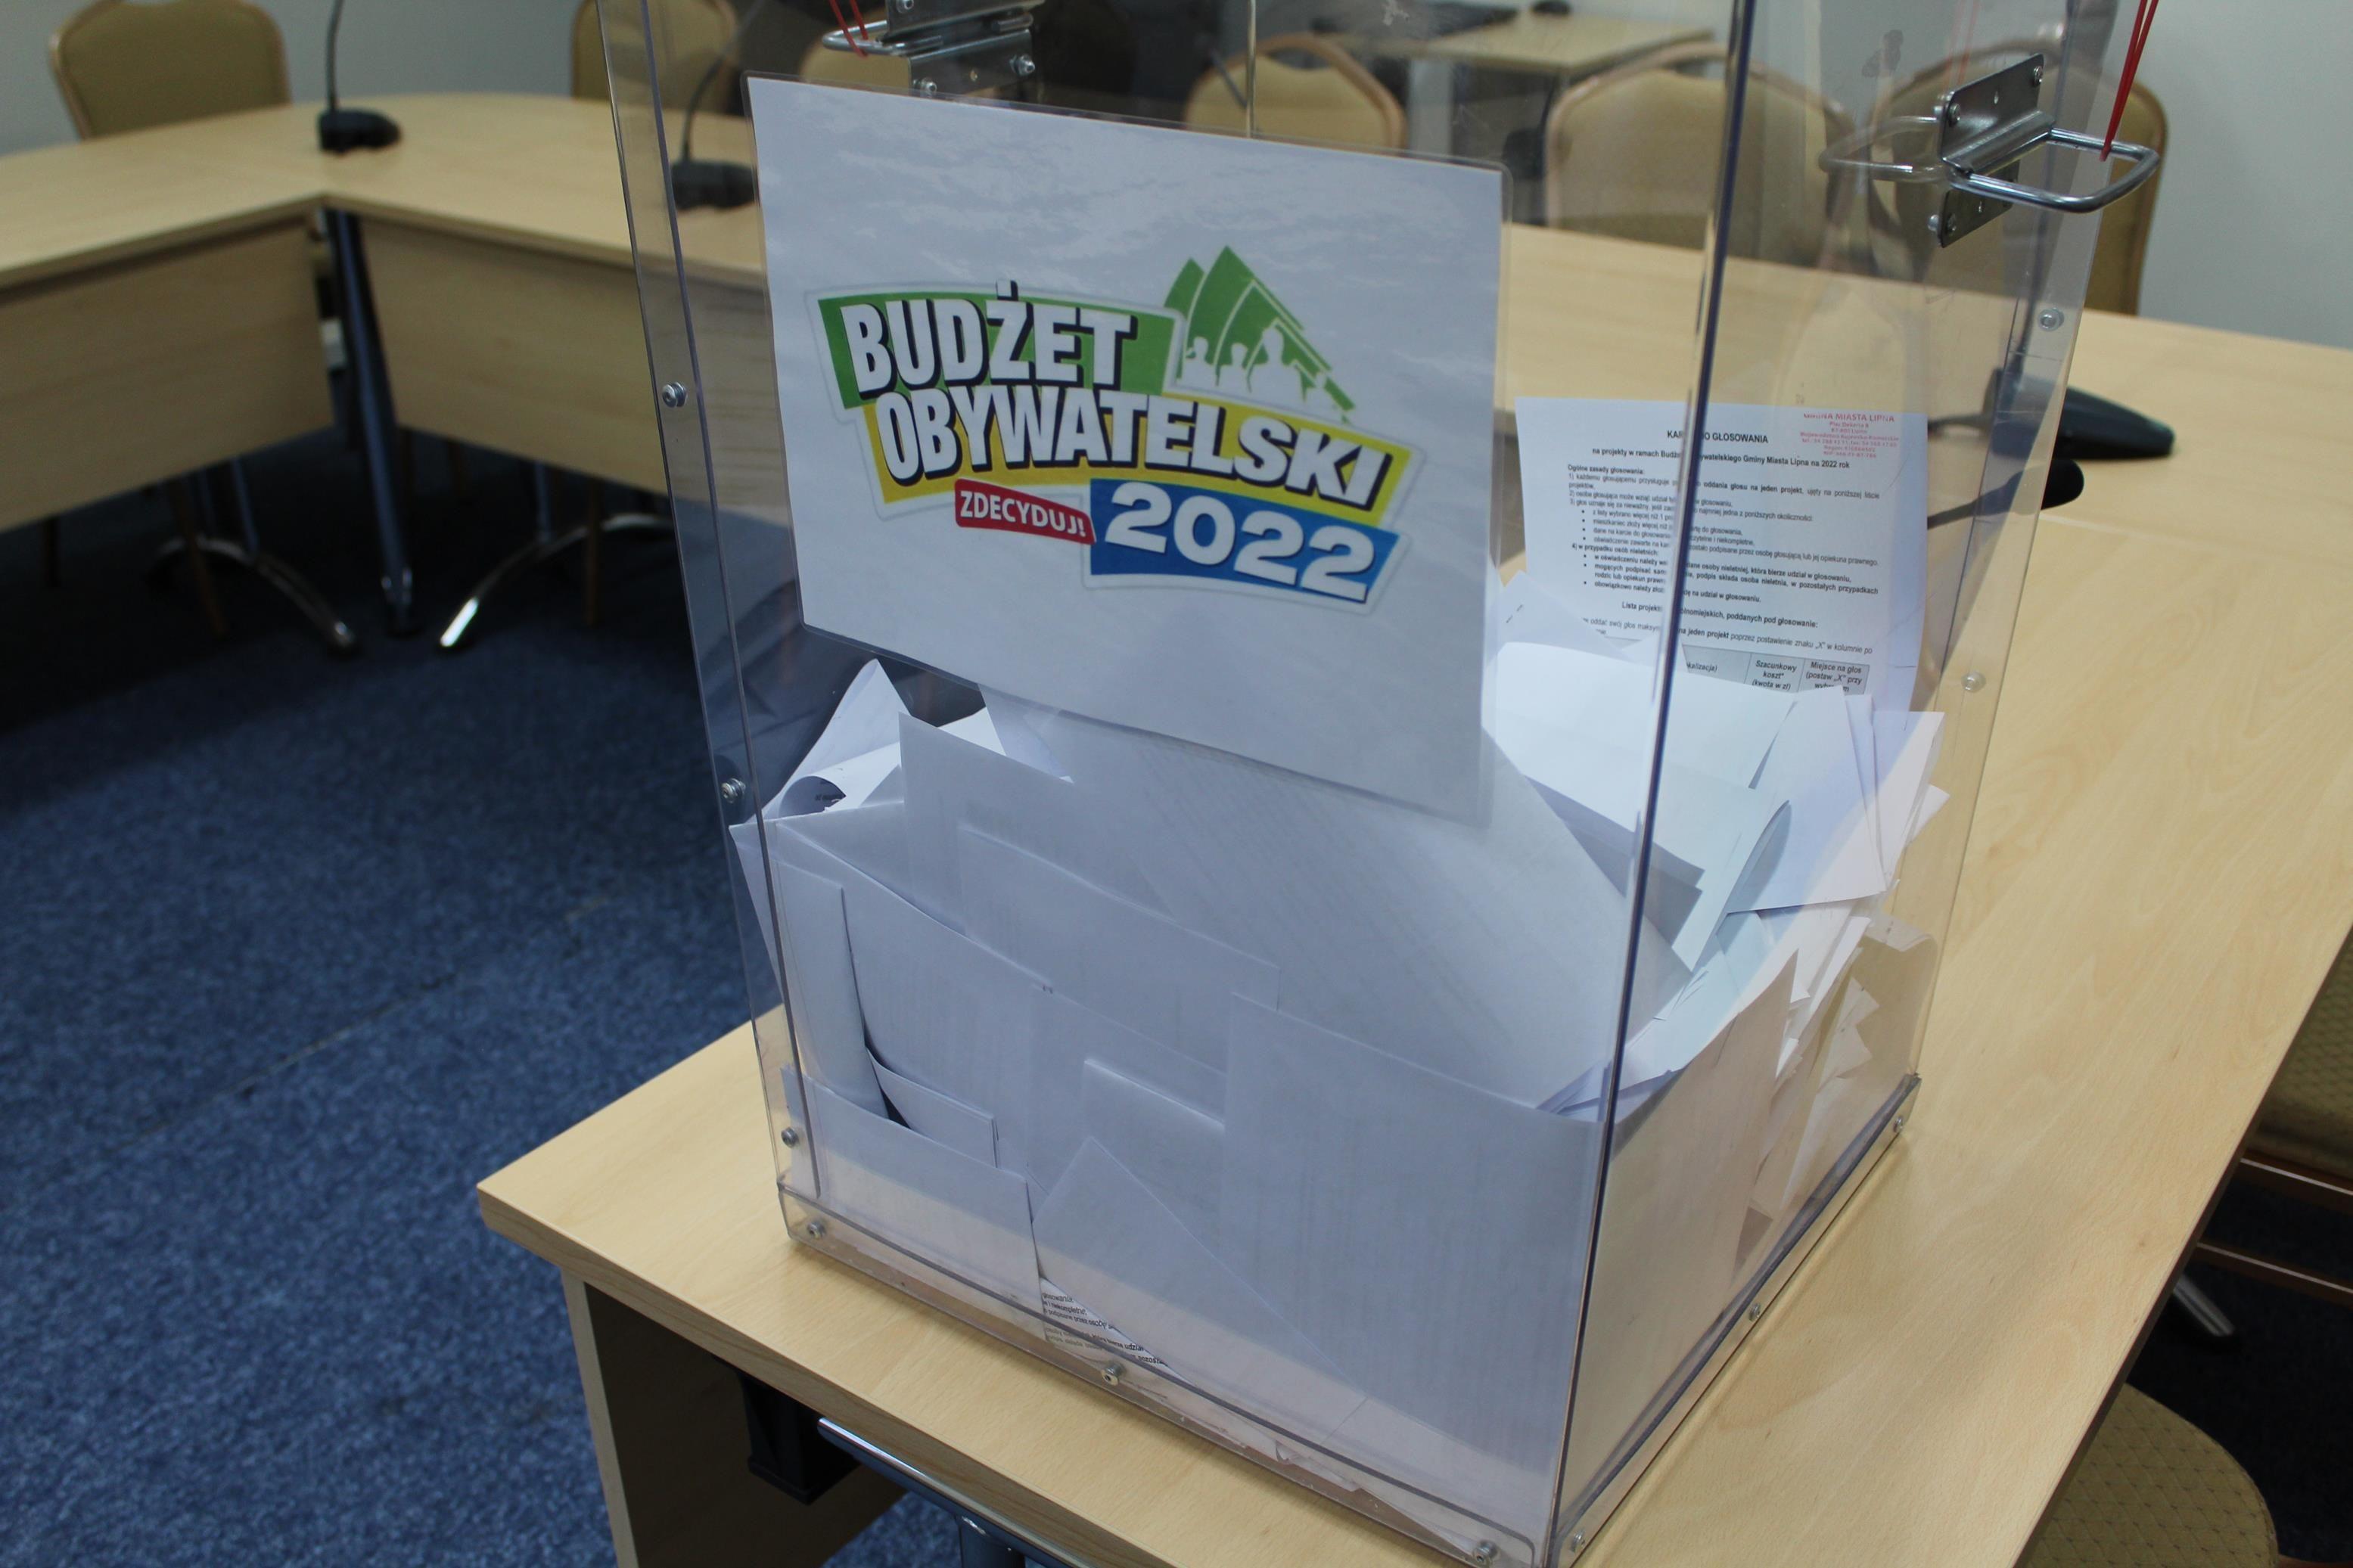 Otwarcie urny do głosowania - Budżet Obywatelski 2022